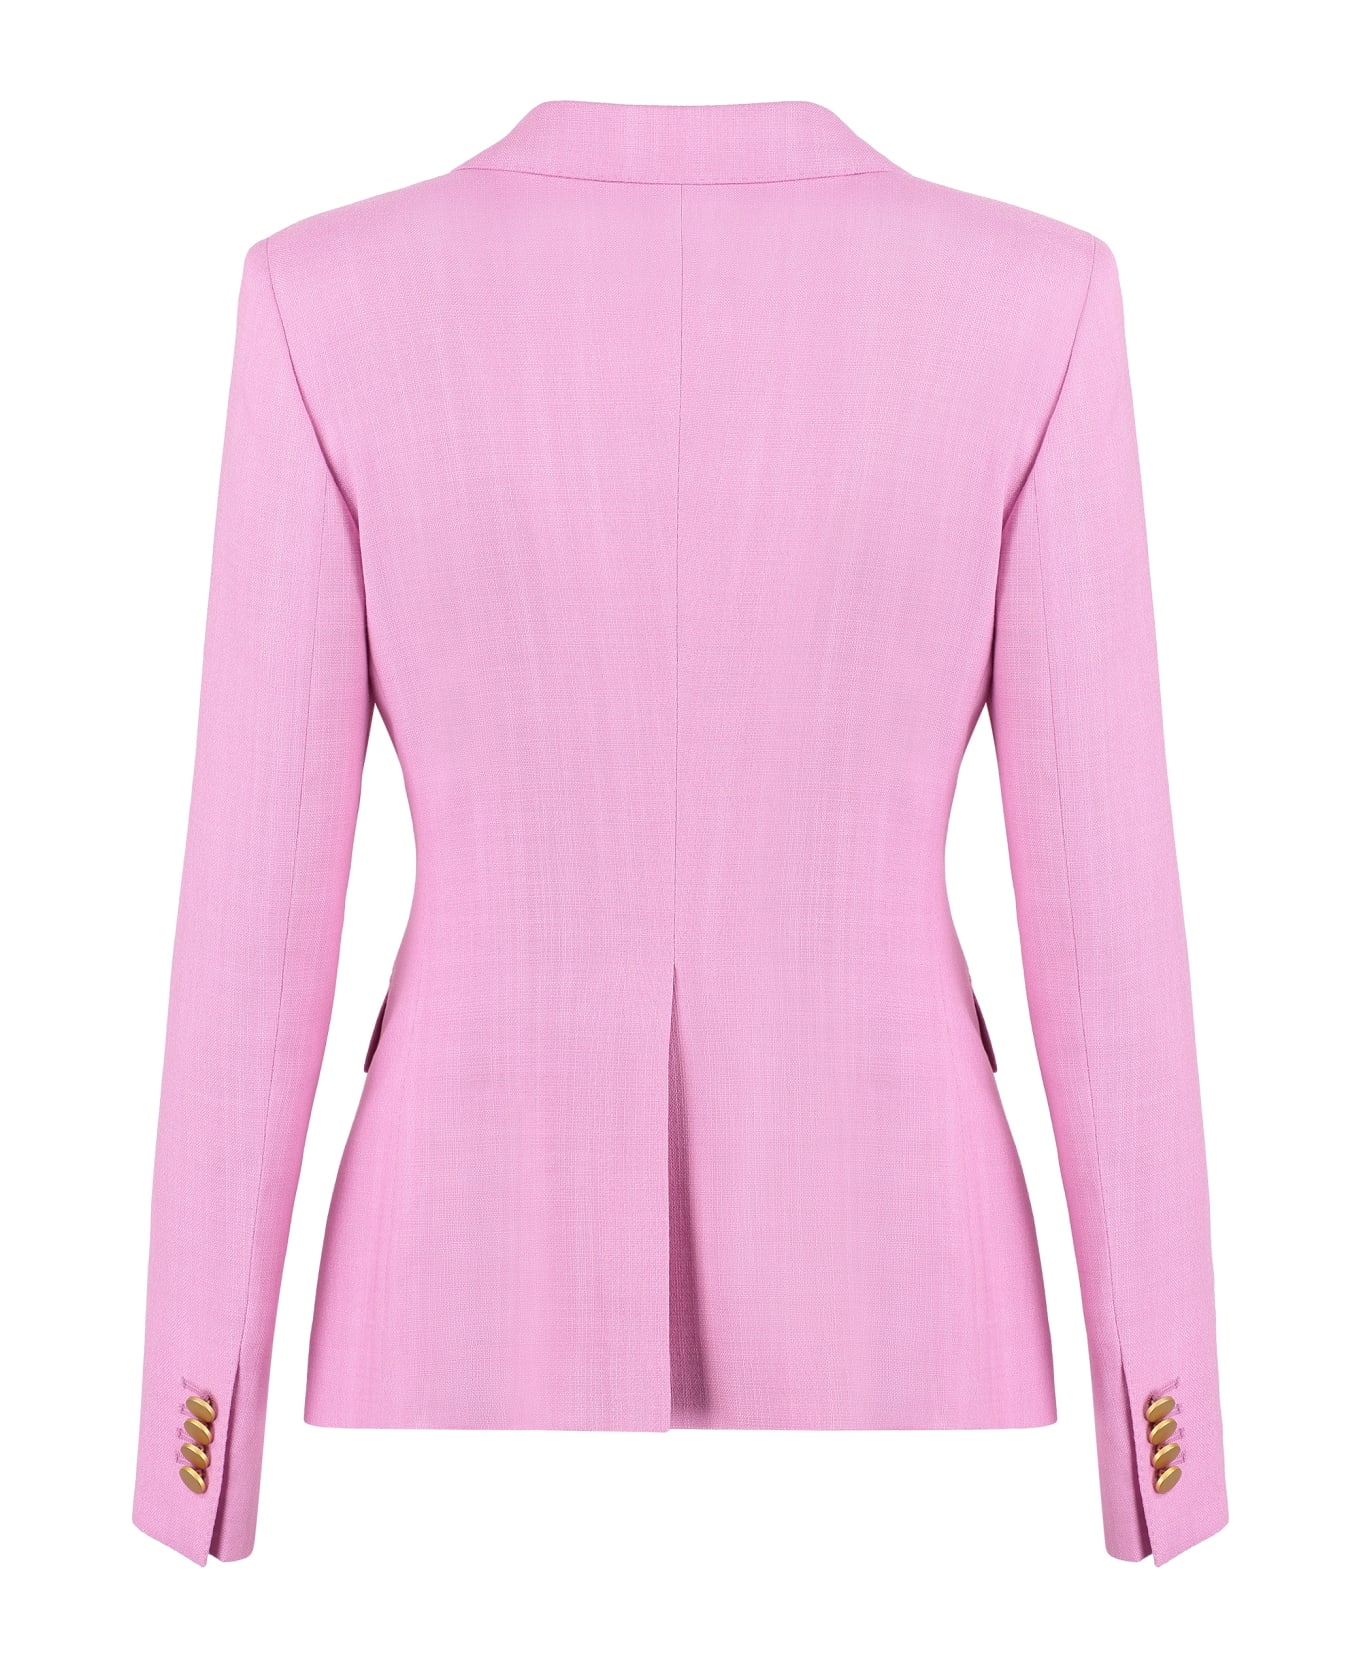 Tagliatore 0205 J-alicya Tweed Jacket - Pink